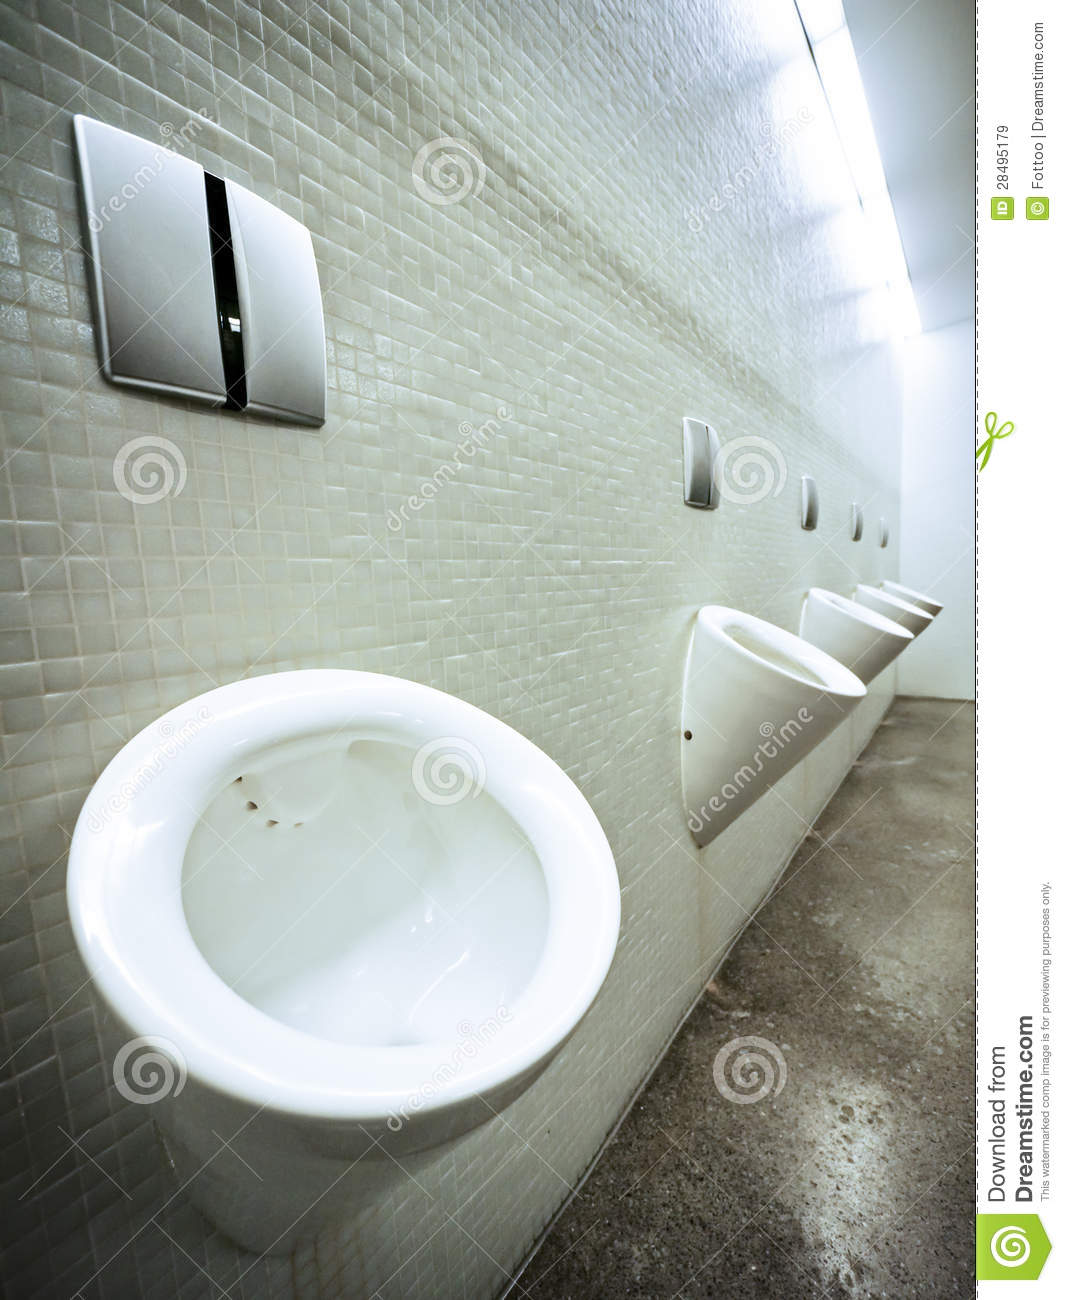 Modern Public Restroom For Men Mr No Pr No 0 518 0